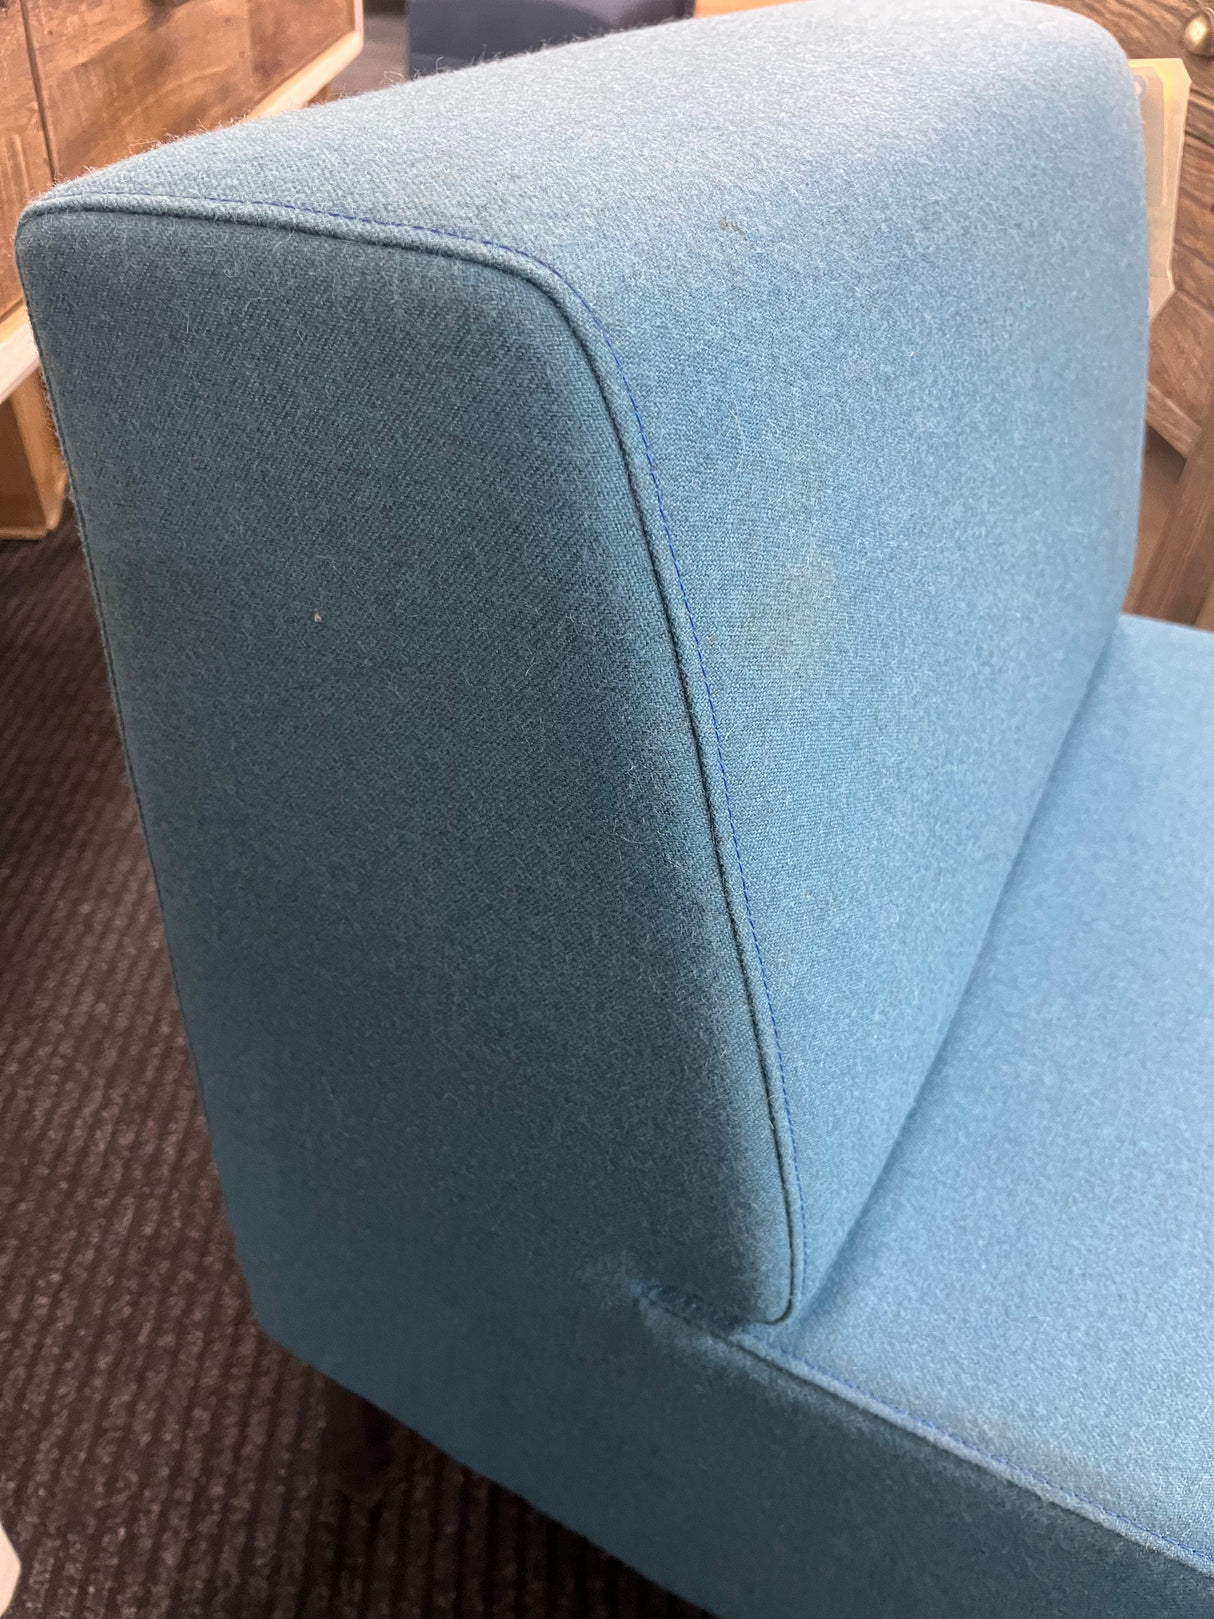 NZ Made Sofa Chair -Light Blue